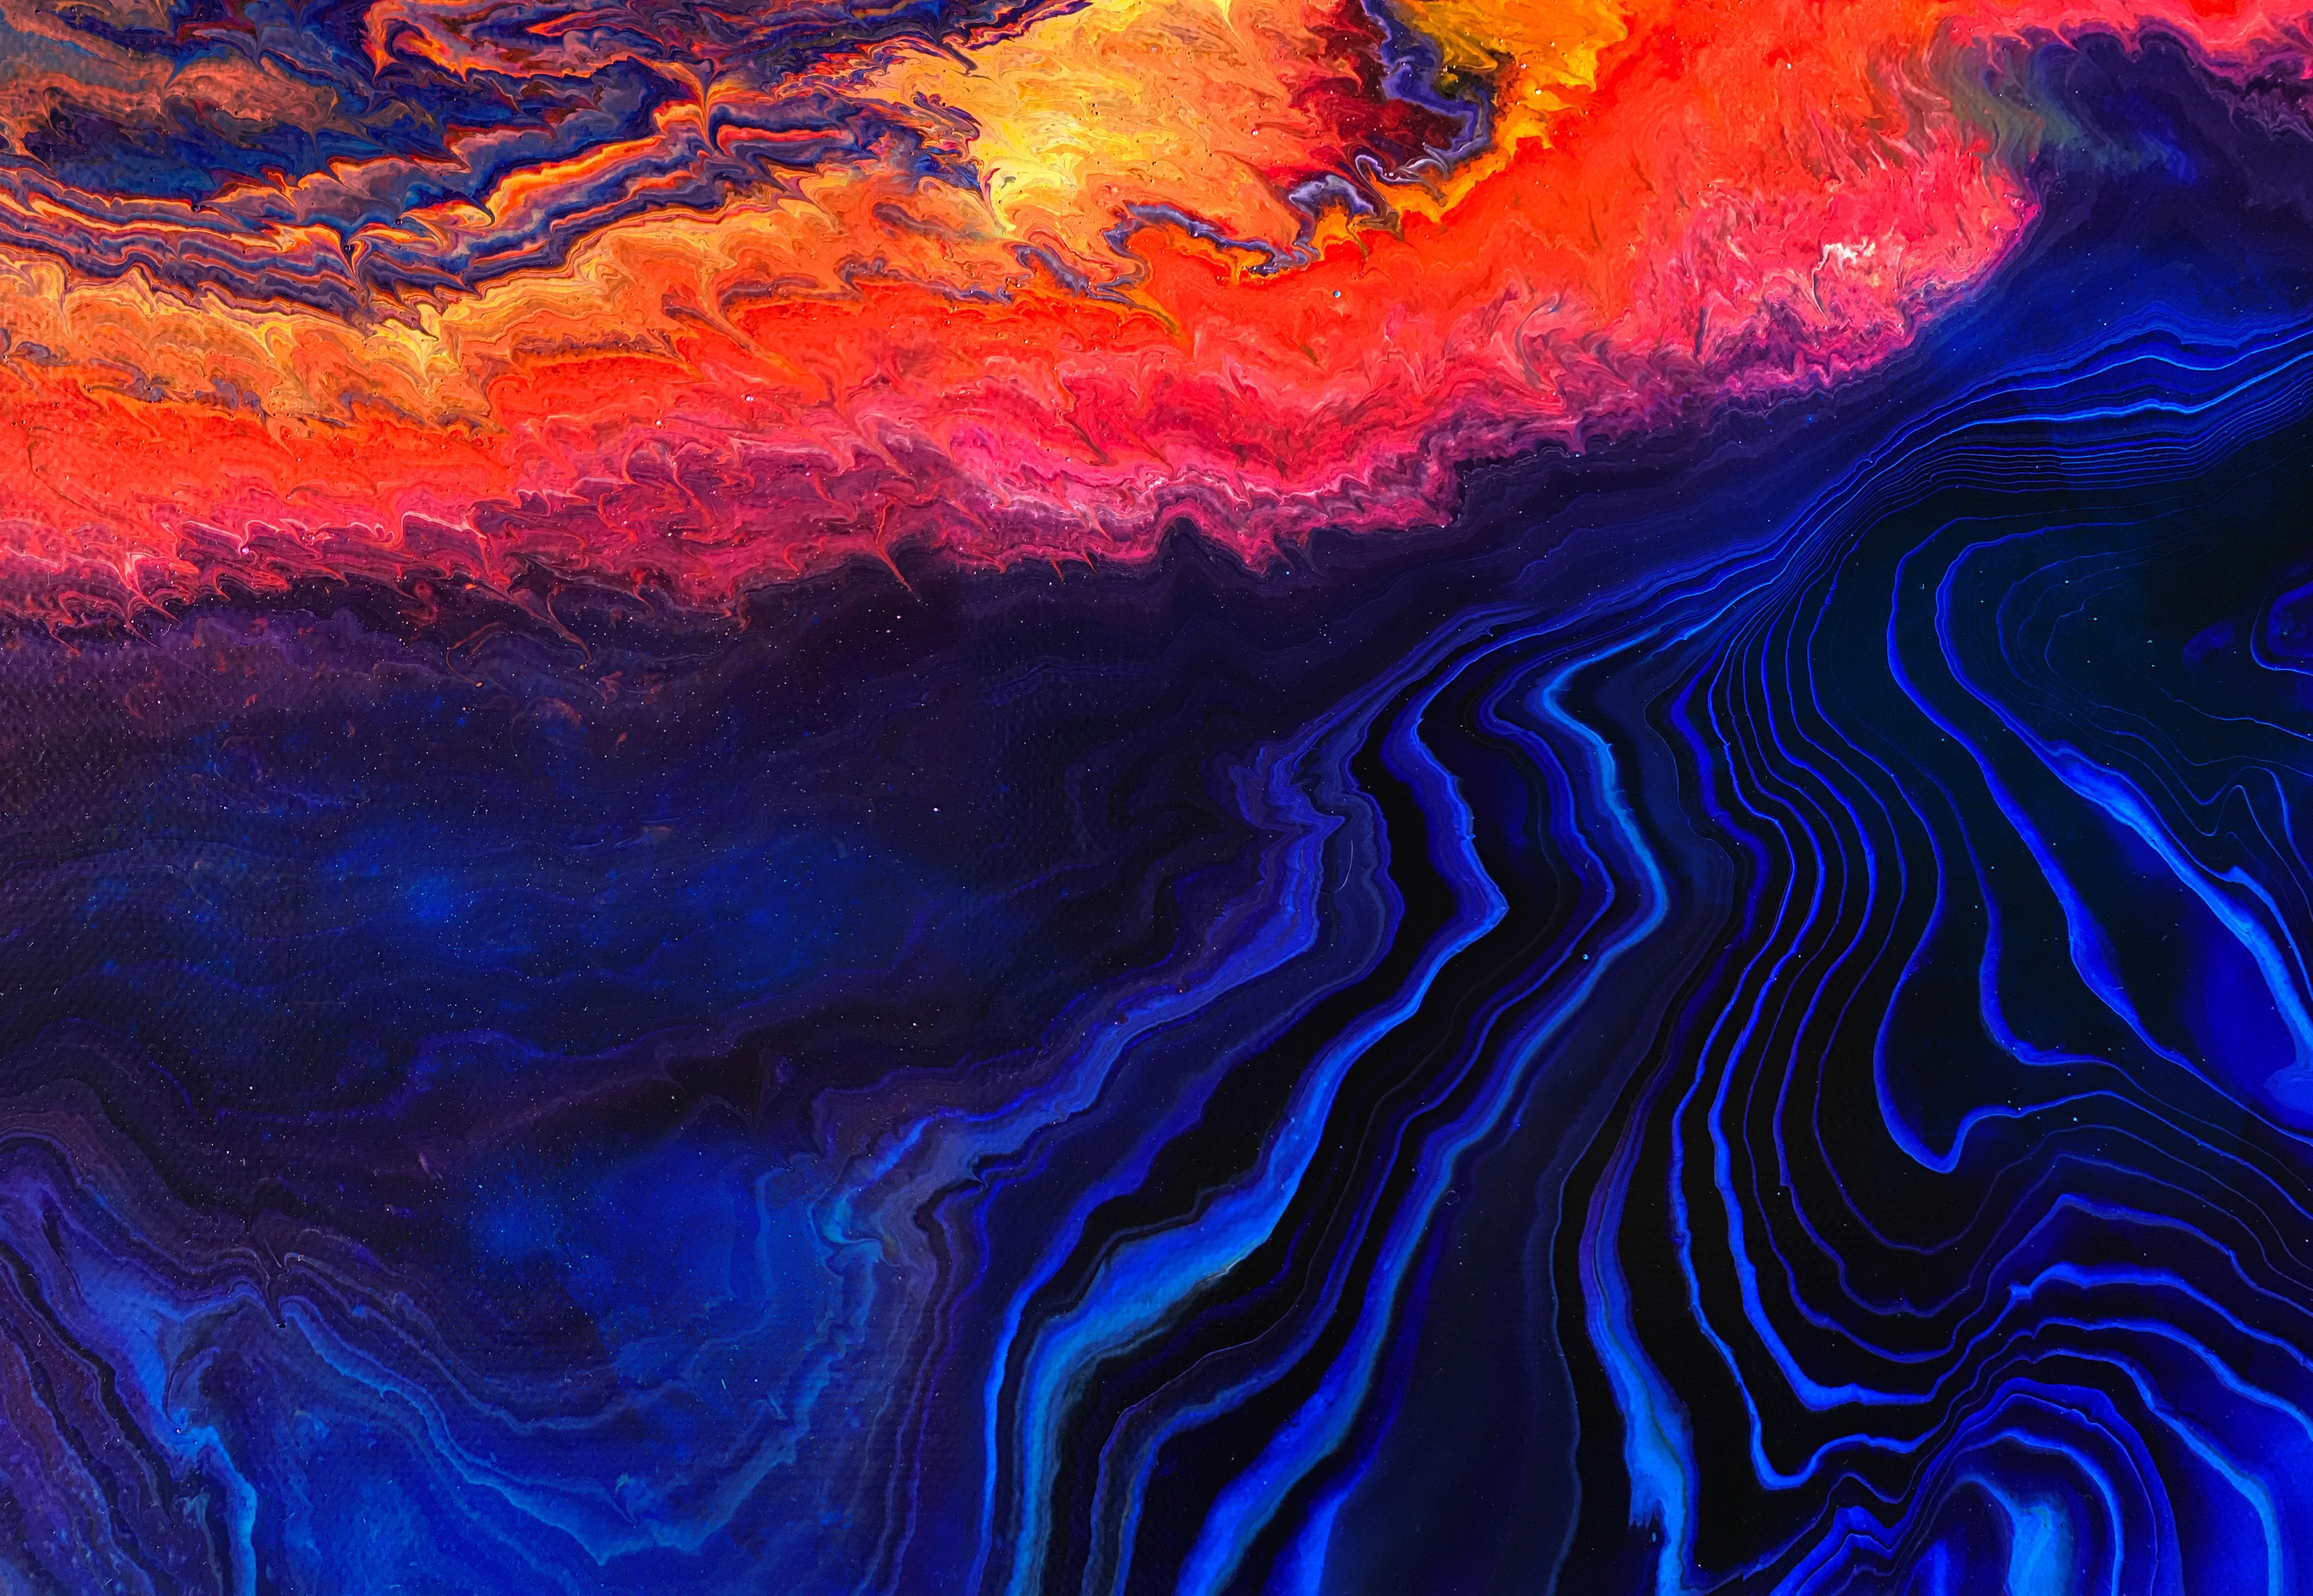 Liquid Abstract Desktop Wallpapers - Top Free Liquid Abstract Desktop